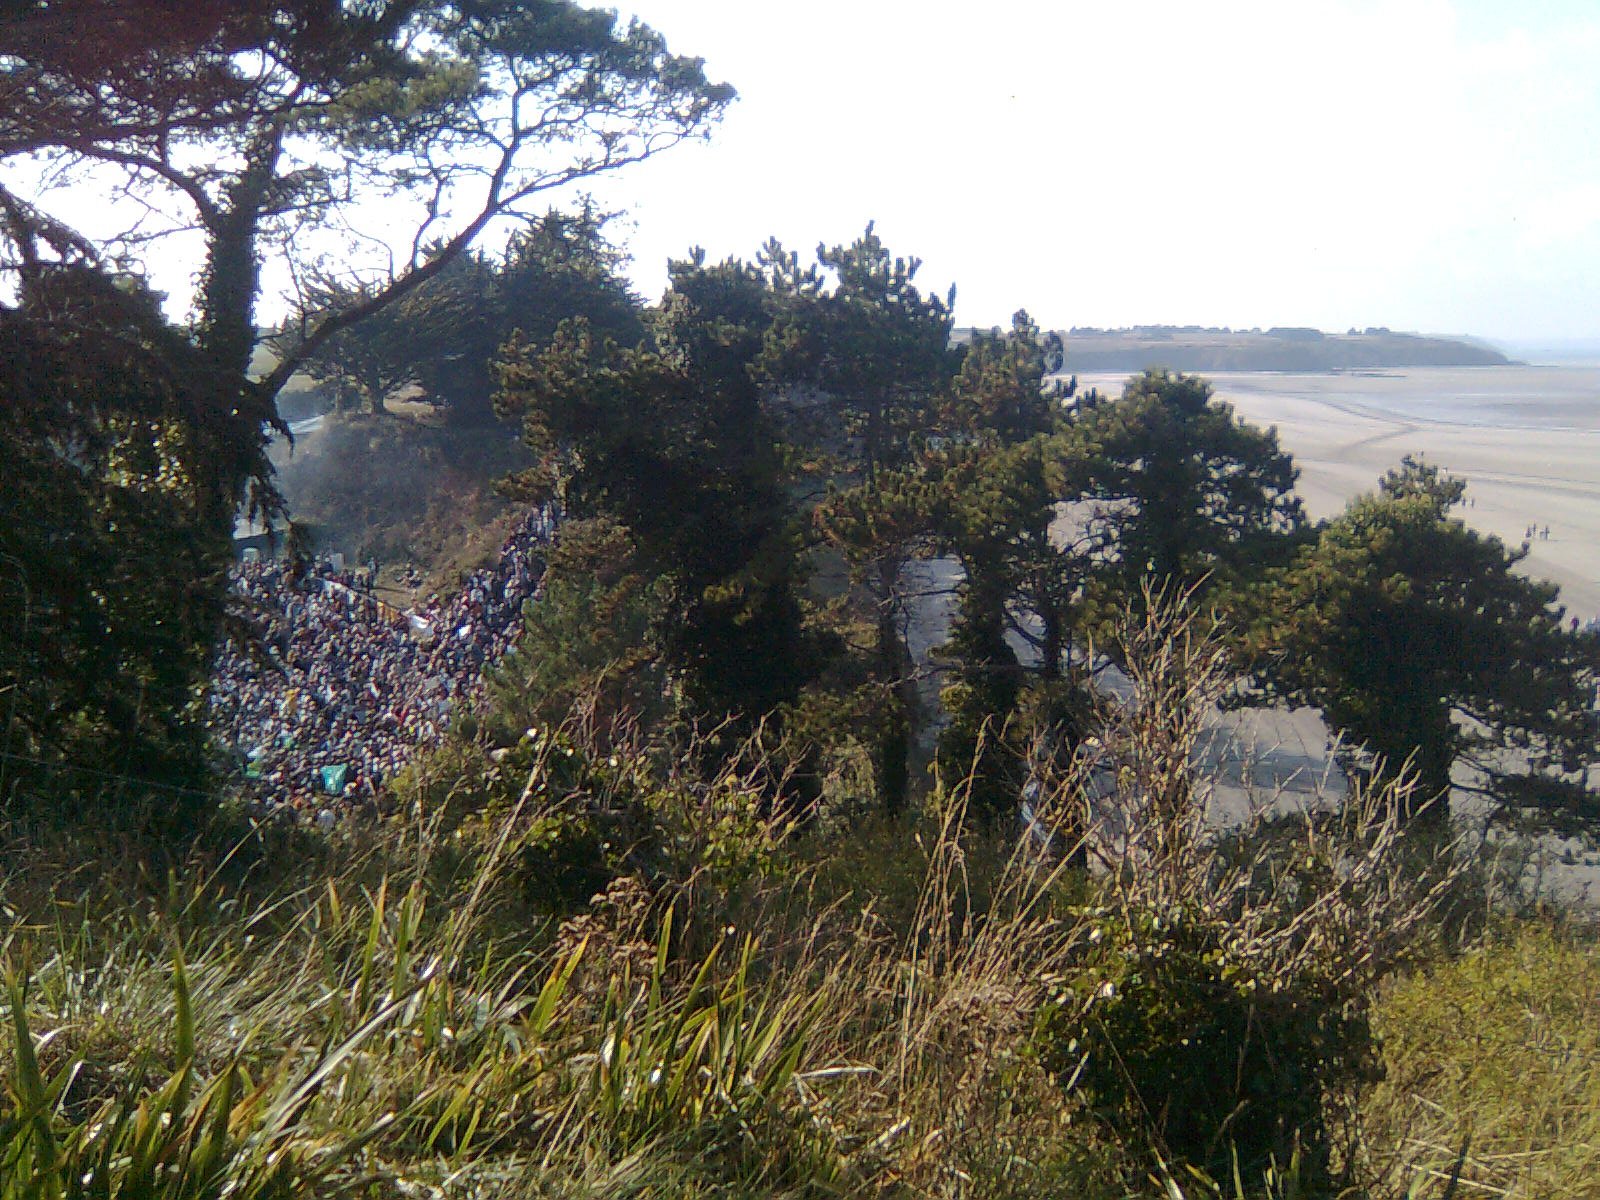 Manifestation en 2009 sur la plage d'Hillion